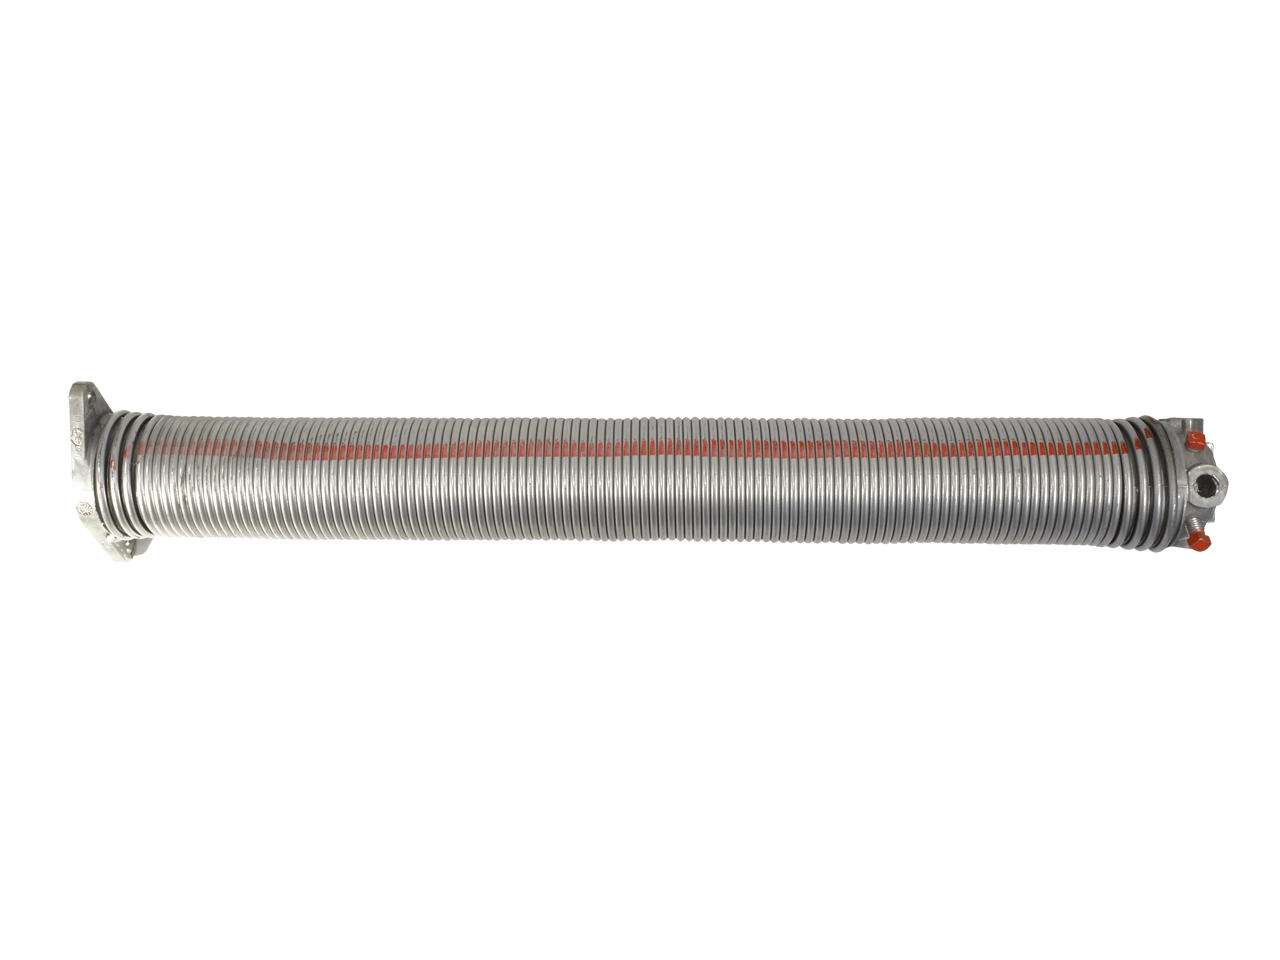 Torfeder, Innendurchmesser 67 mm, Drahtstärke 6,5 mm, Windung Links, mit Köpfen für Welle 25,4mm